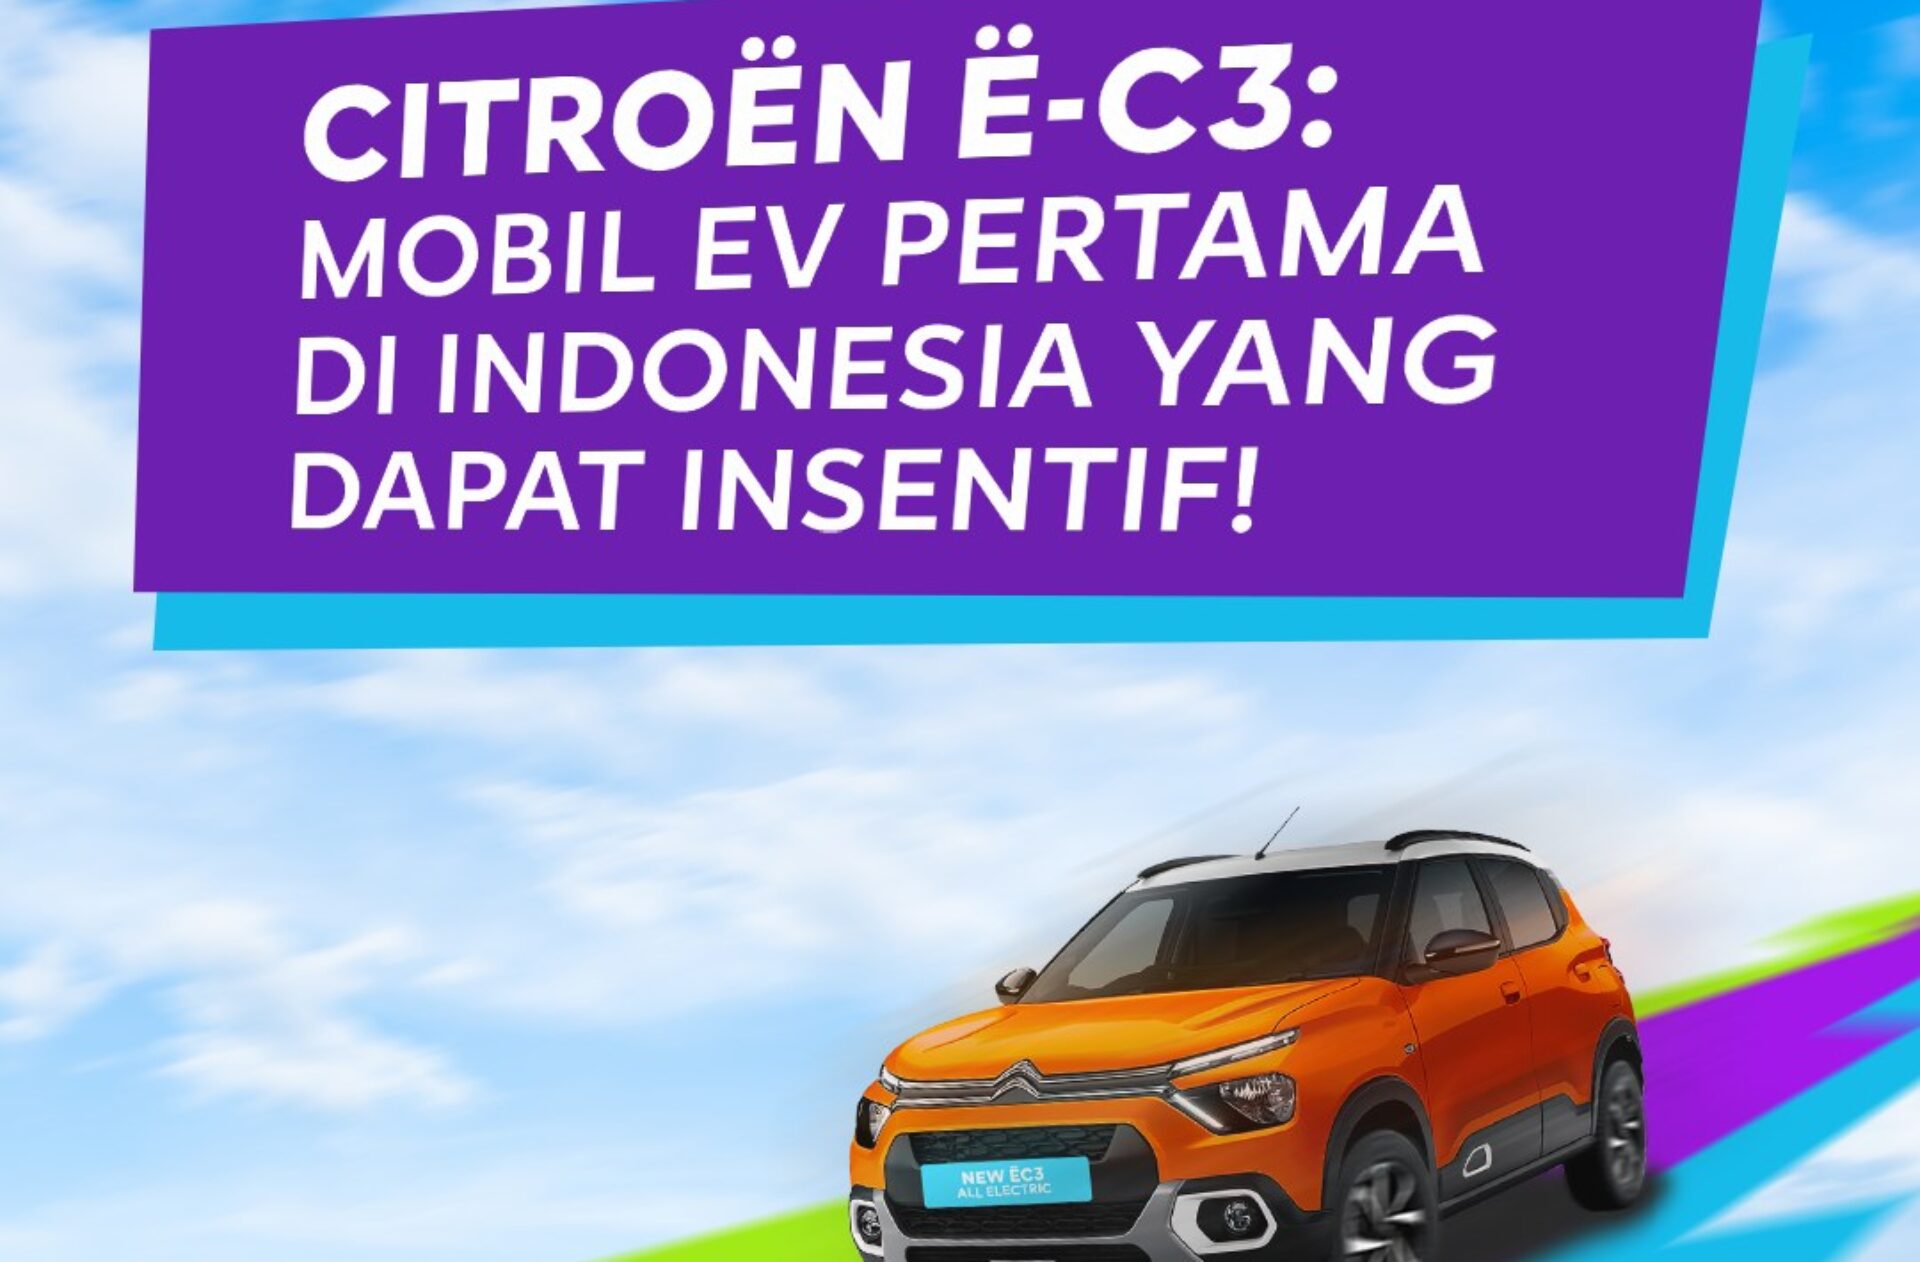 Citroën Indonesia Mulai Impor Mobil Listrik Dengan Bea Masuk 0%: Inovasi Terbaru di Industri Otomotif